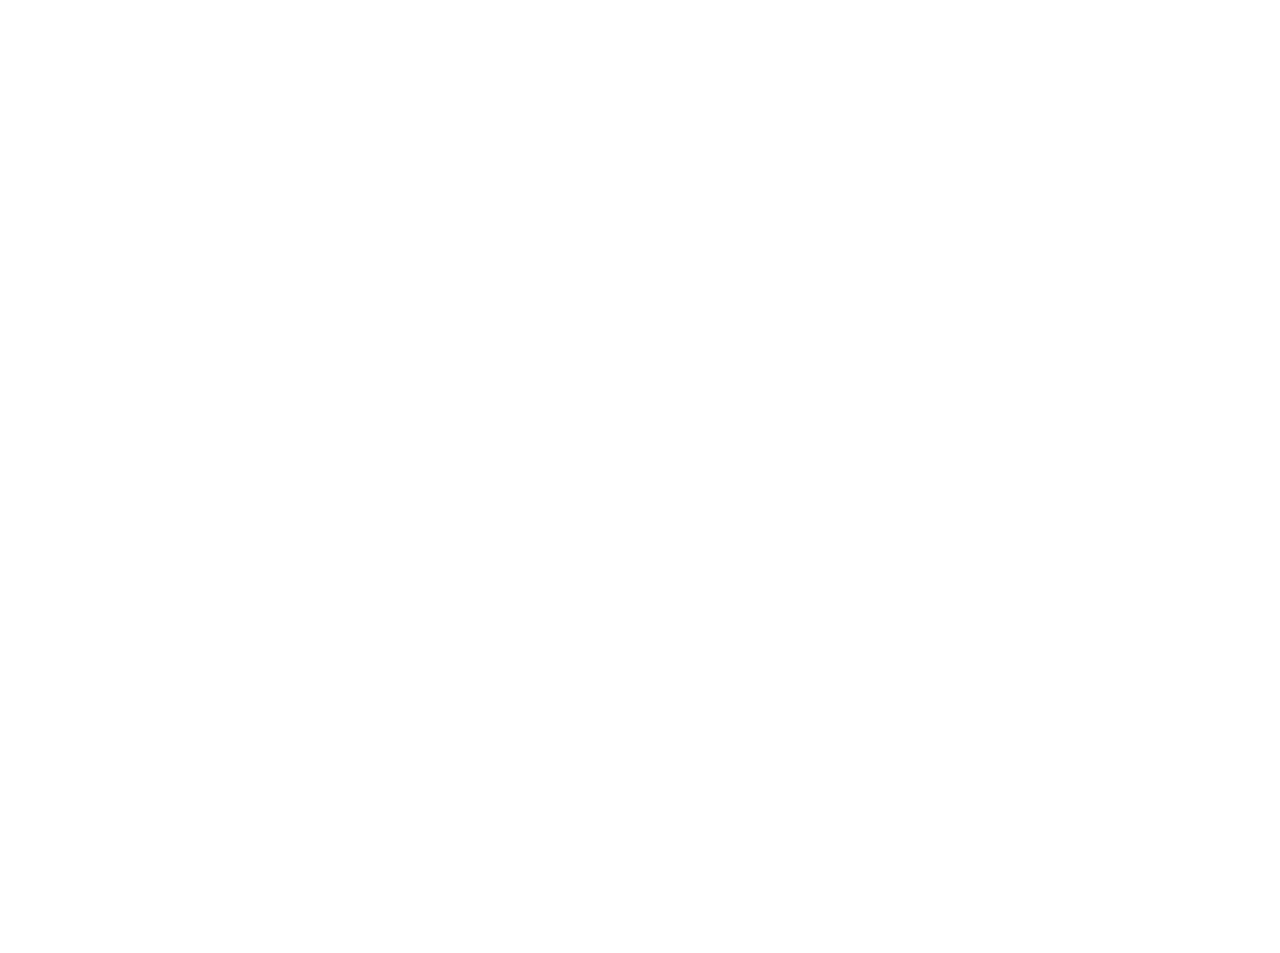 SkrillaTolove's logo